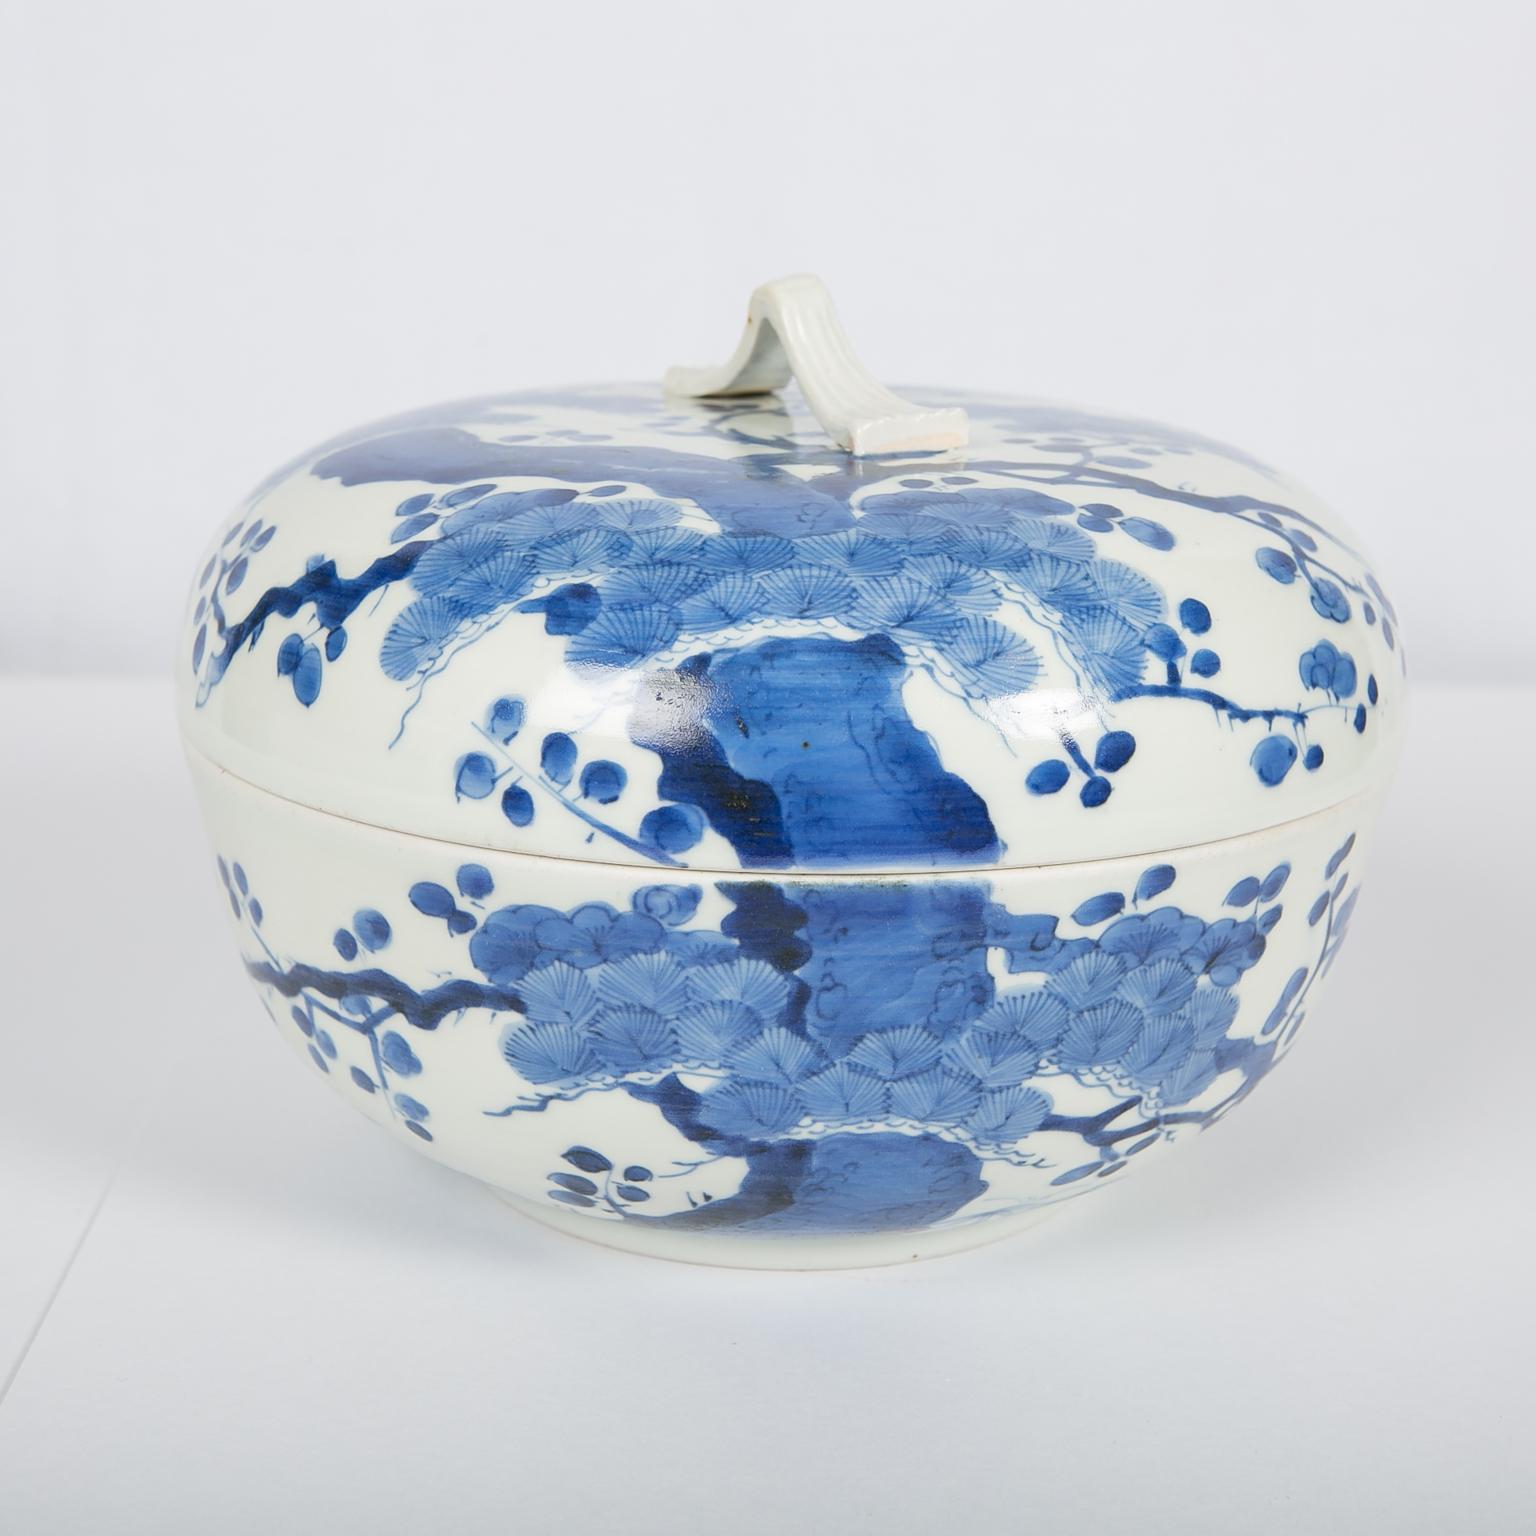 WARUM WIR ES LIEBEN: Das cremige Weiß und das leuchtende Blau
Wir freuen uns:: diese schöne blau-weiße Schale aus japanischem Porzellan anbieten zu können:: die auf die frühe Edo-Periode (um 1760) datiert ist. Der Körper dieser Schale hat eine